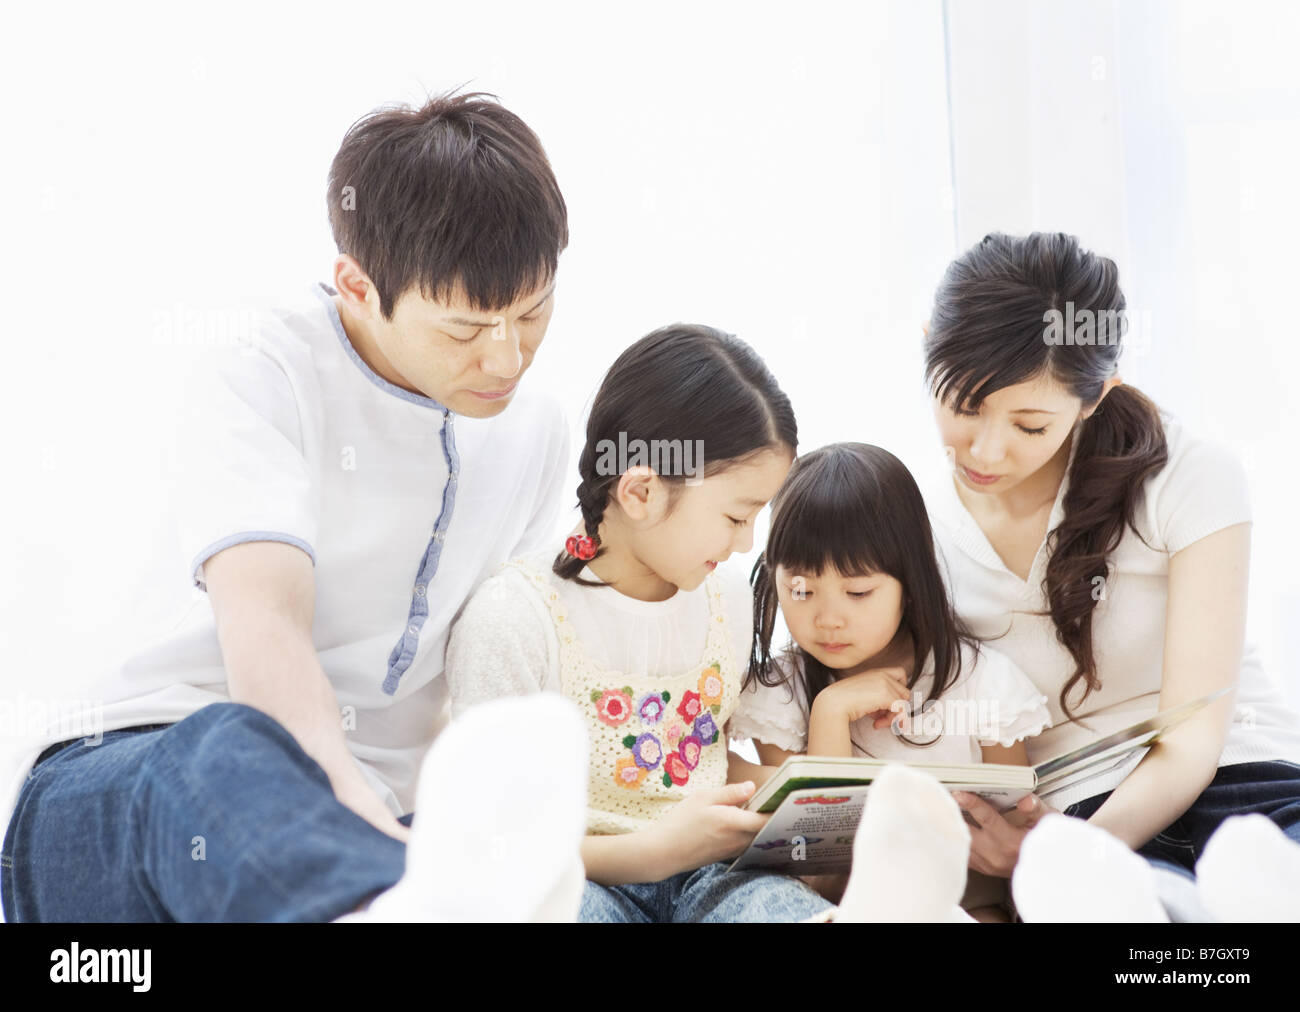 японская эротика с детьми фото 81